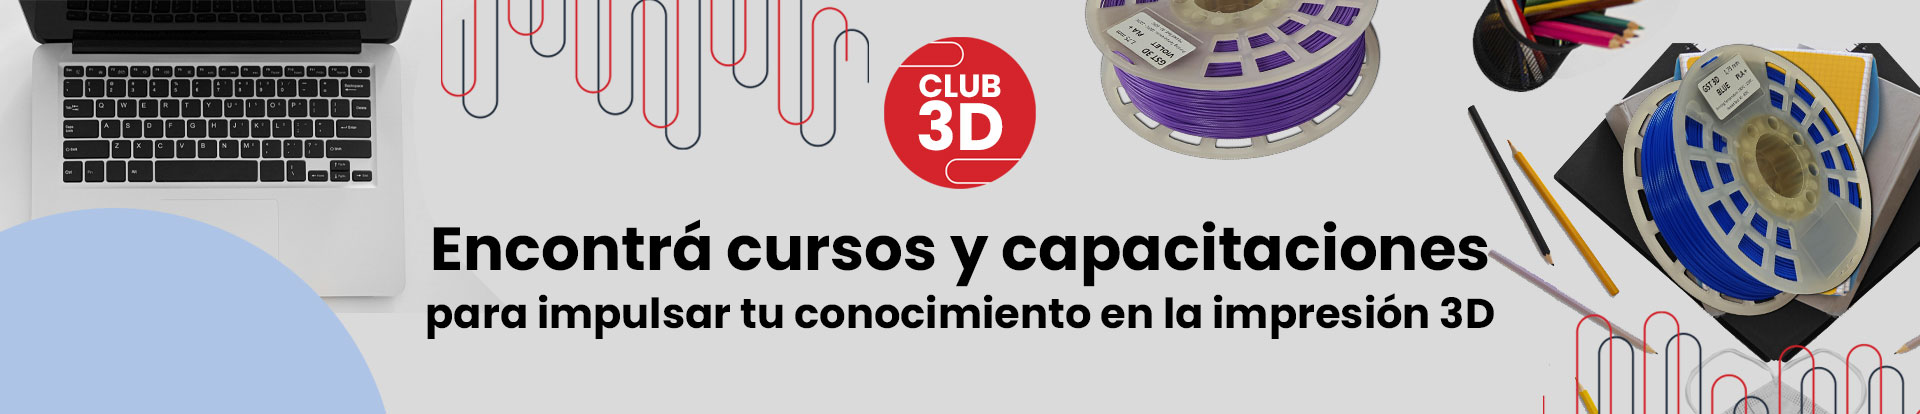 Web-Banner-Club-3D-1